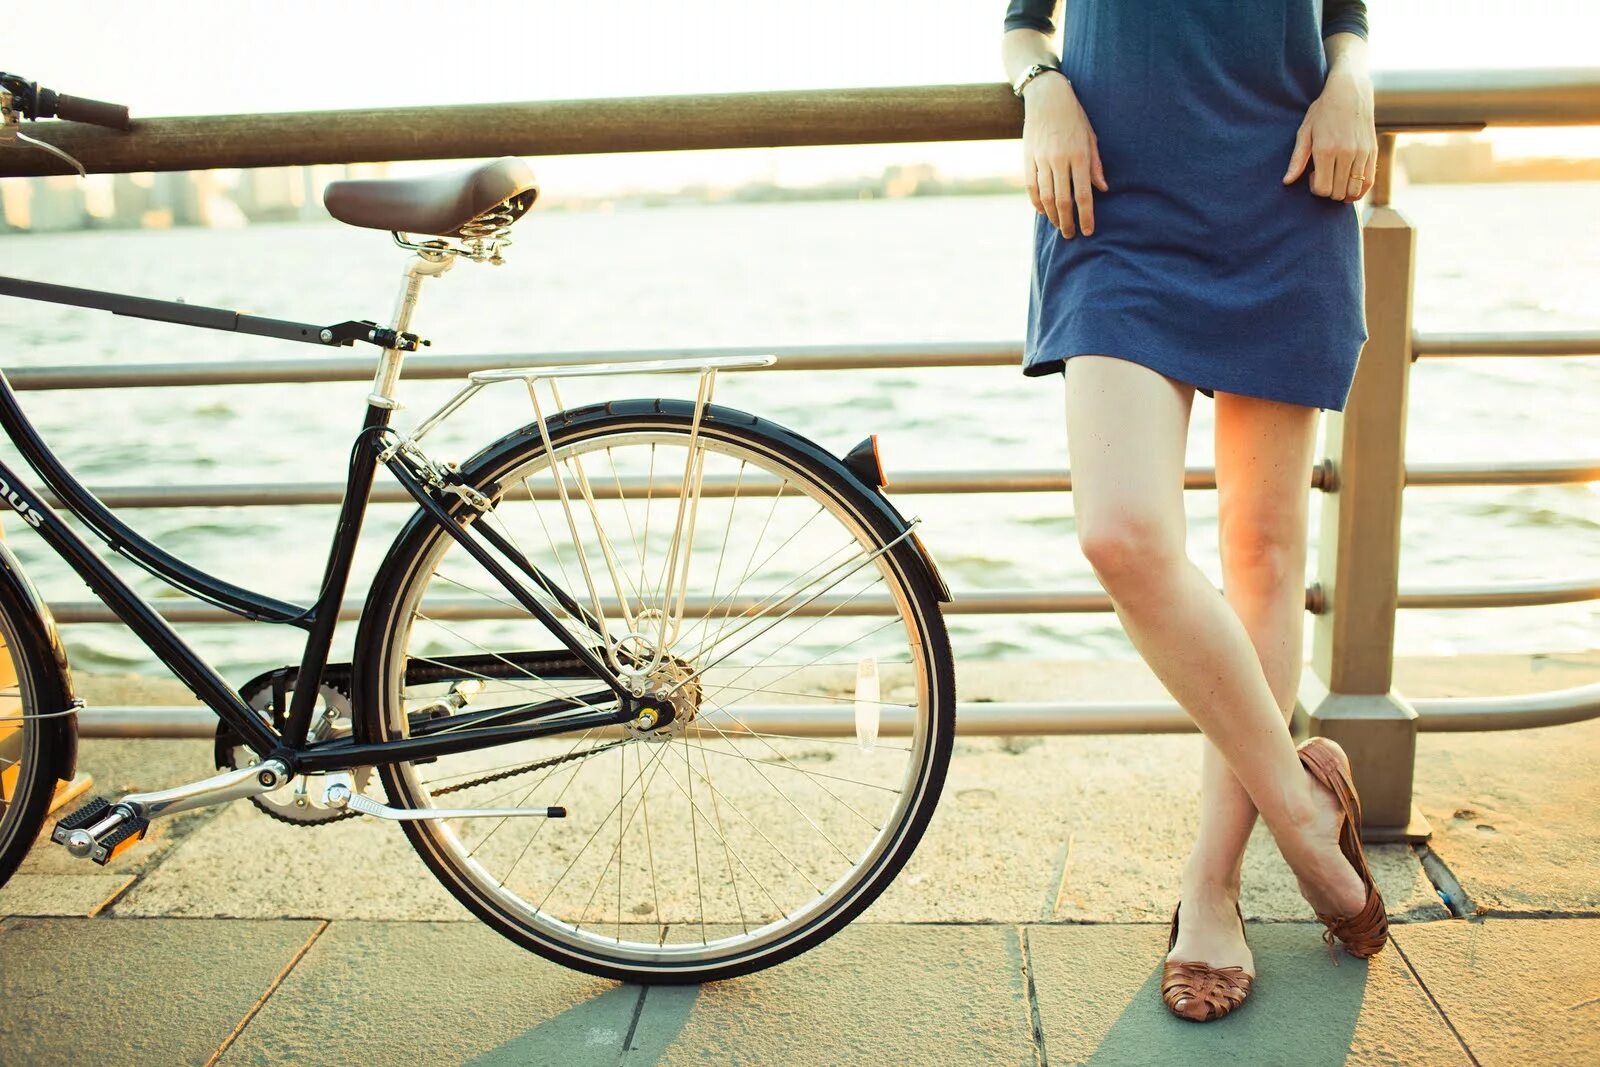 I m wearing skirt. В юбке на велосипеде. Девушки на велосипеде в юбке. В мини юбке на велосипеде. Девушка в платье на велосипеде.